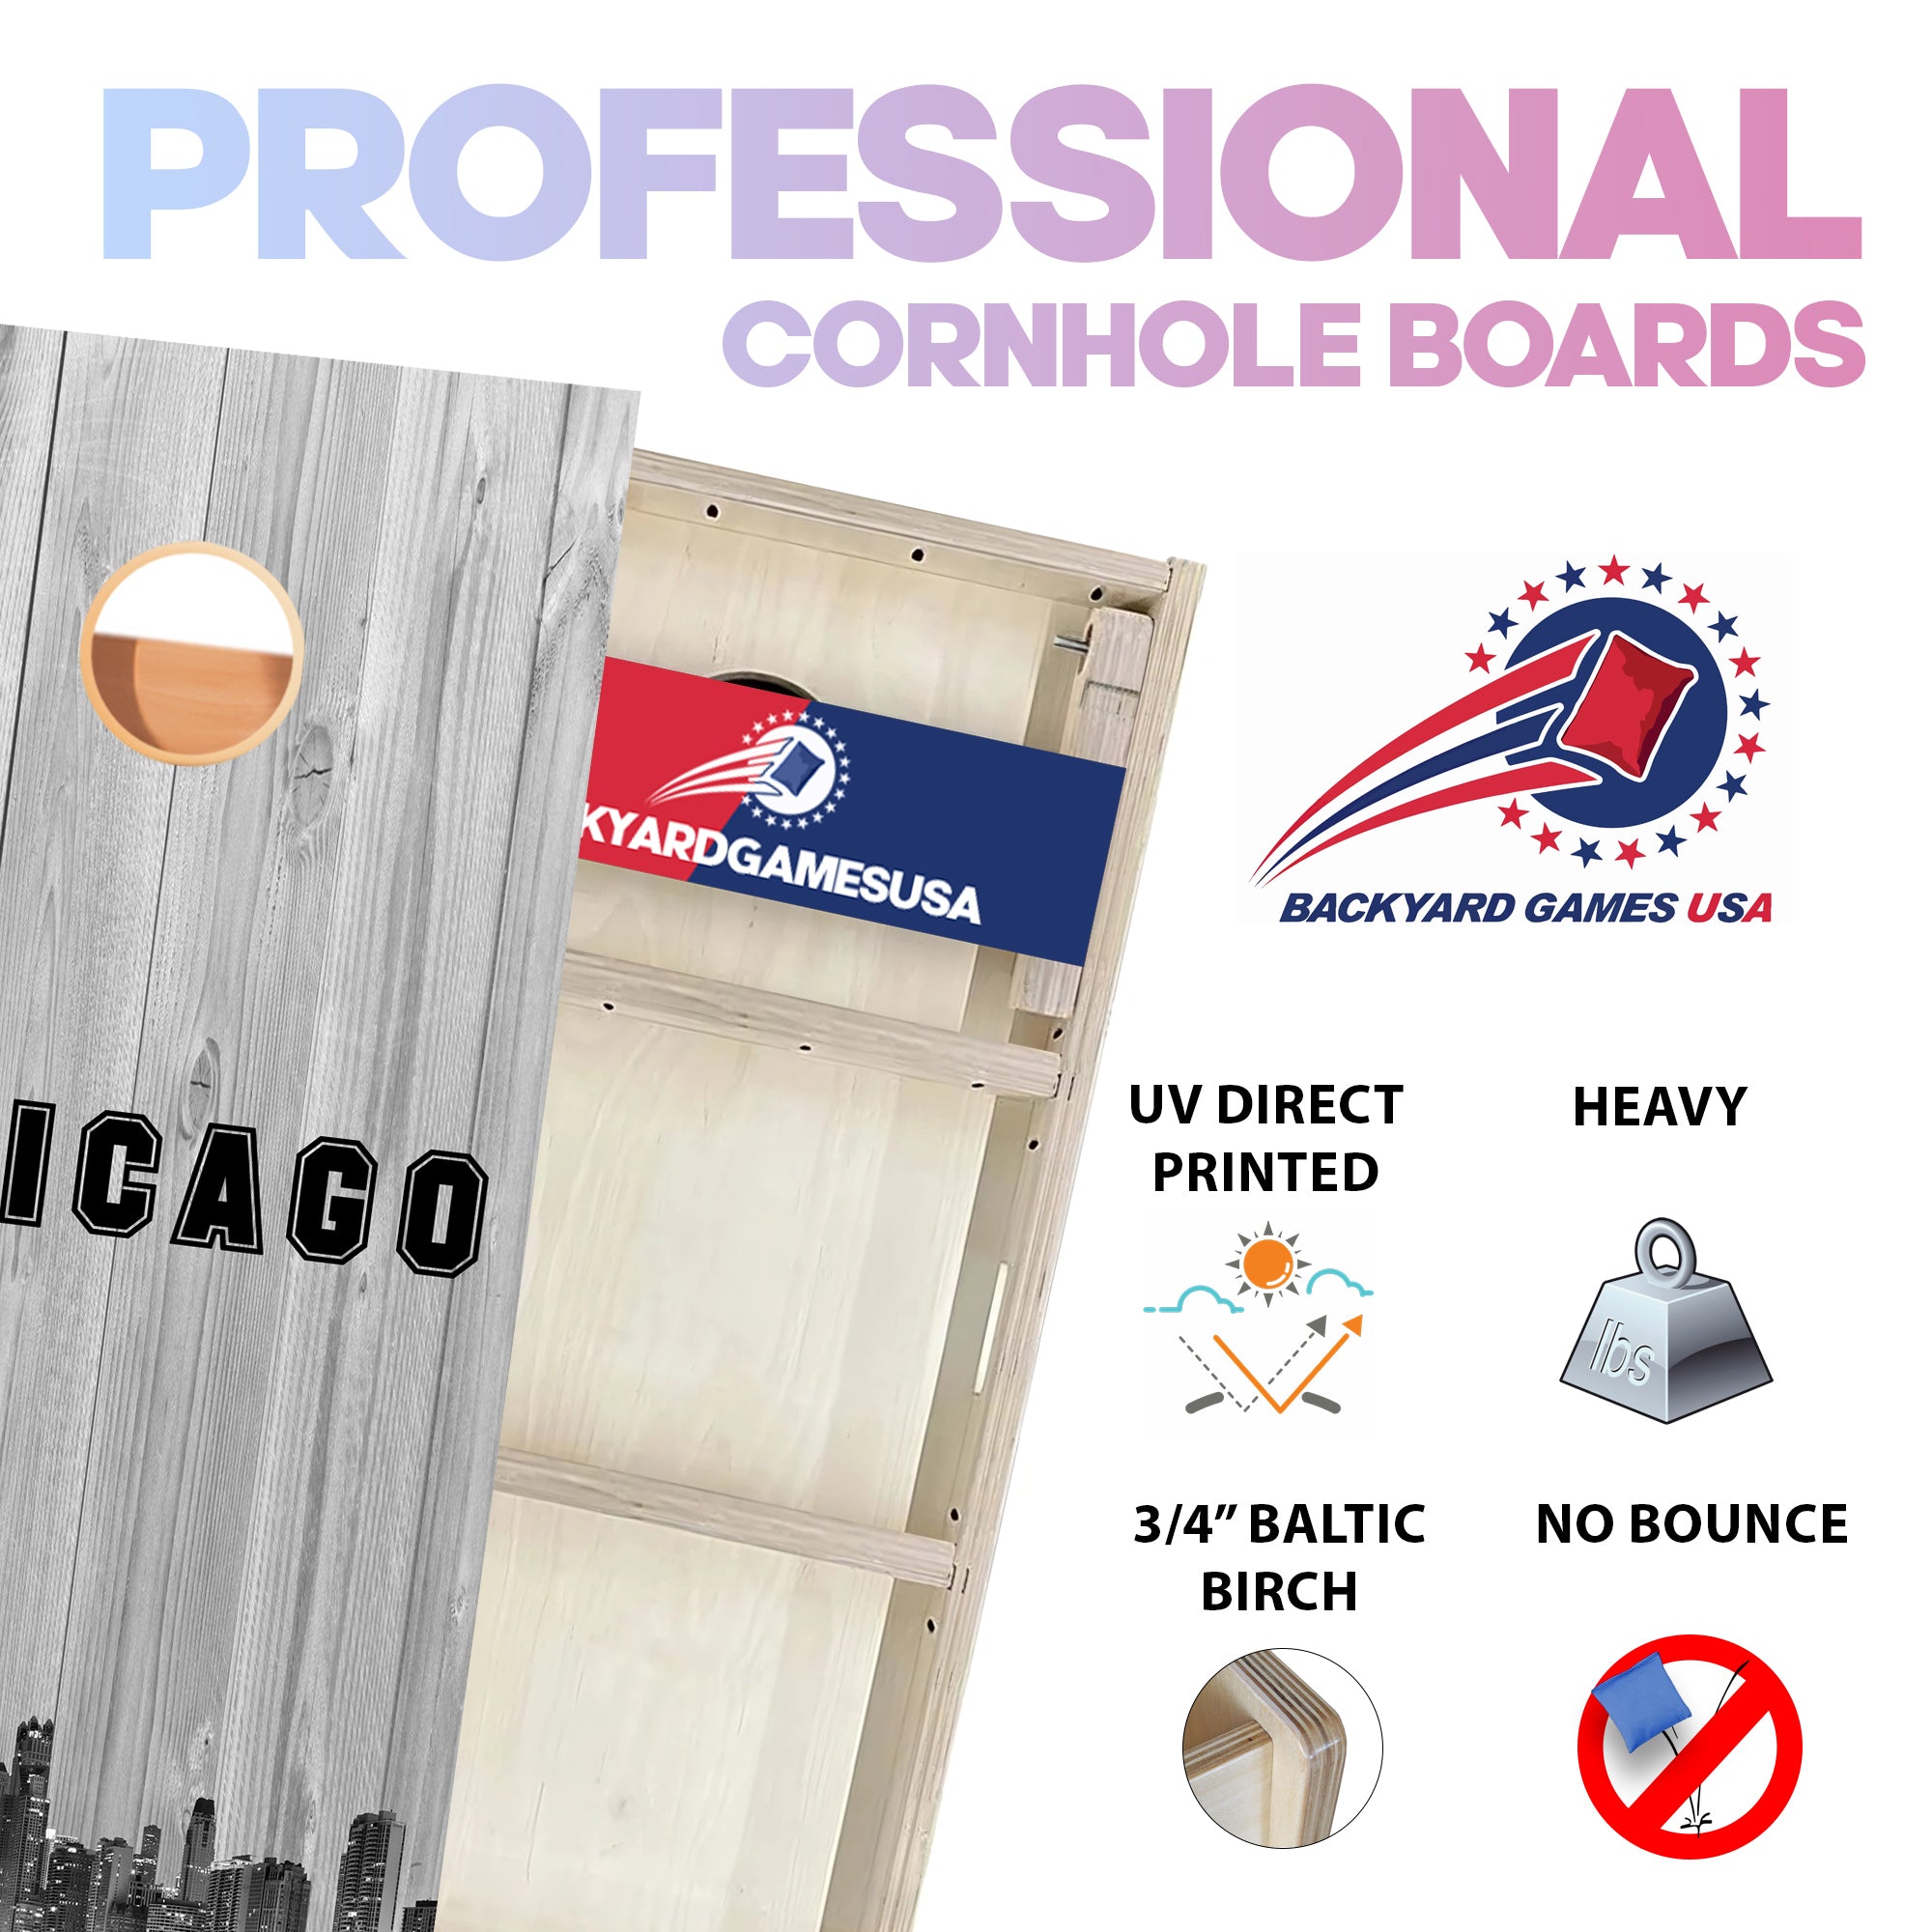 White Sox Professional Cornhole Boards